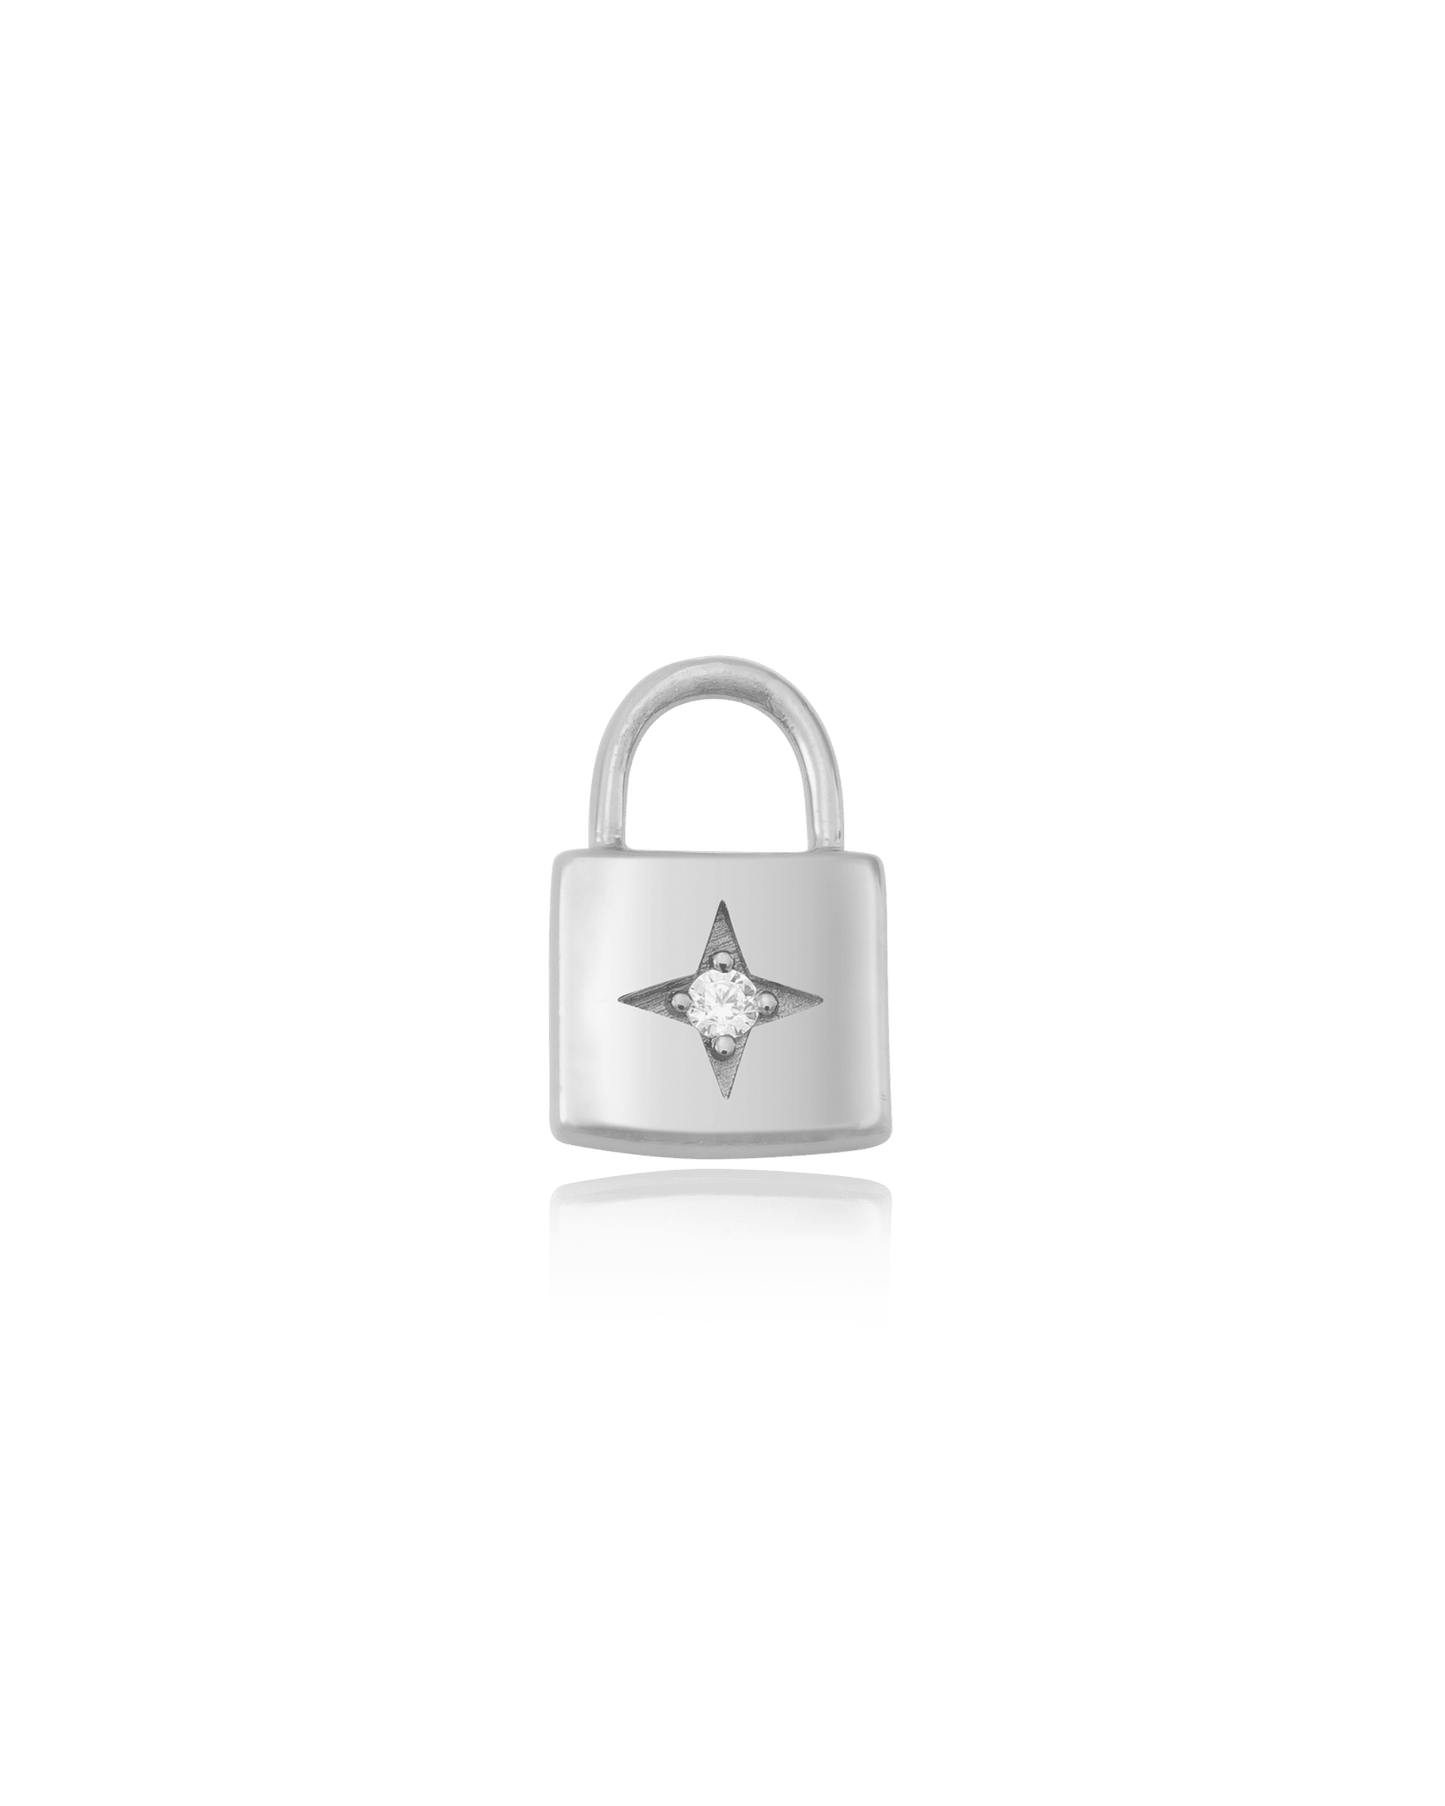 Lock Charm - 925 Sterling Silver Charm magal-dev No 